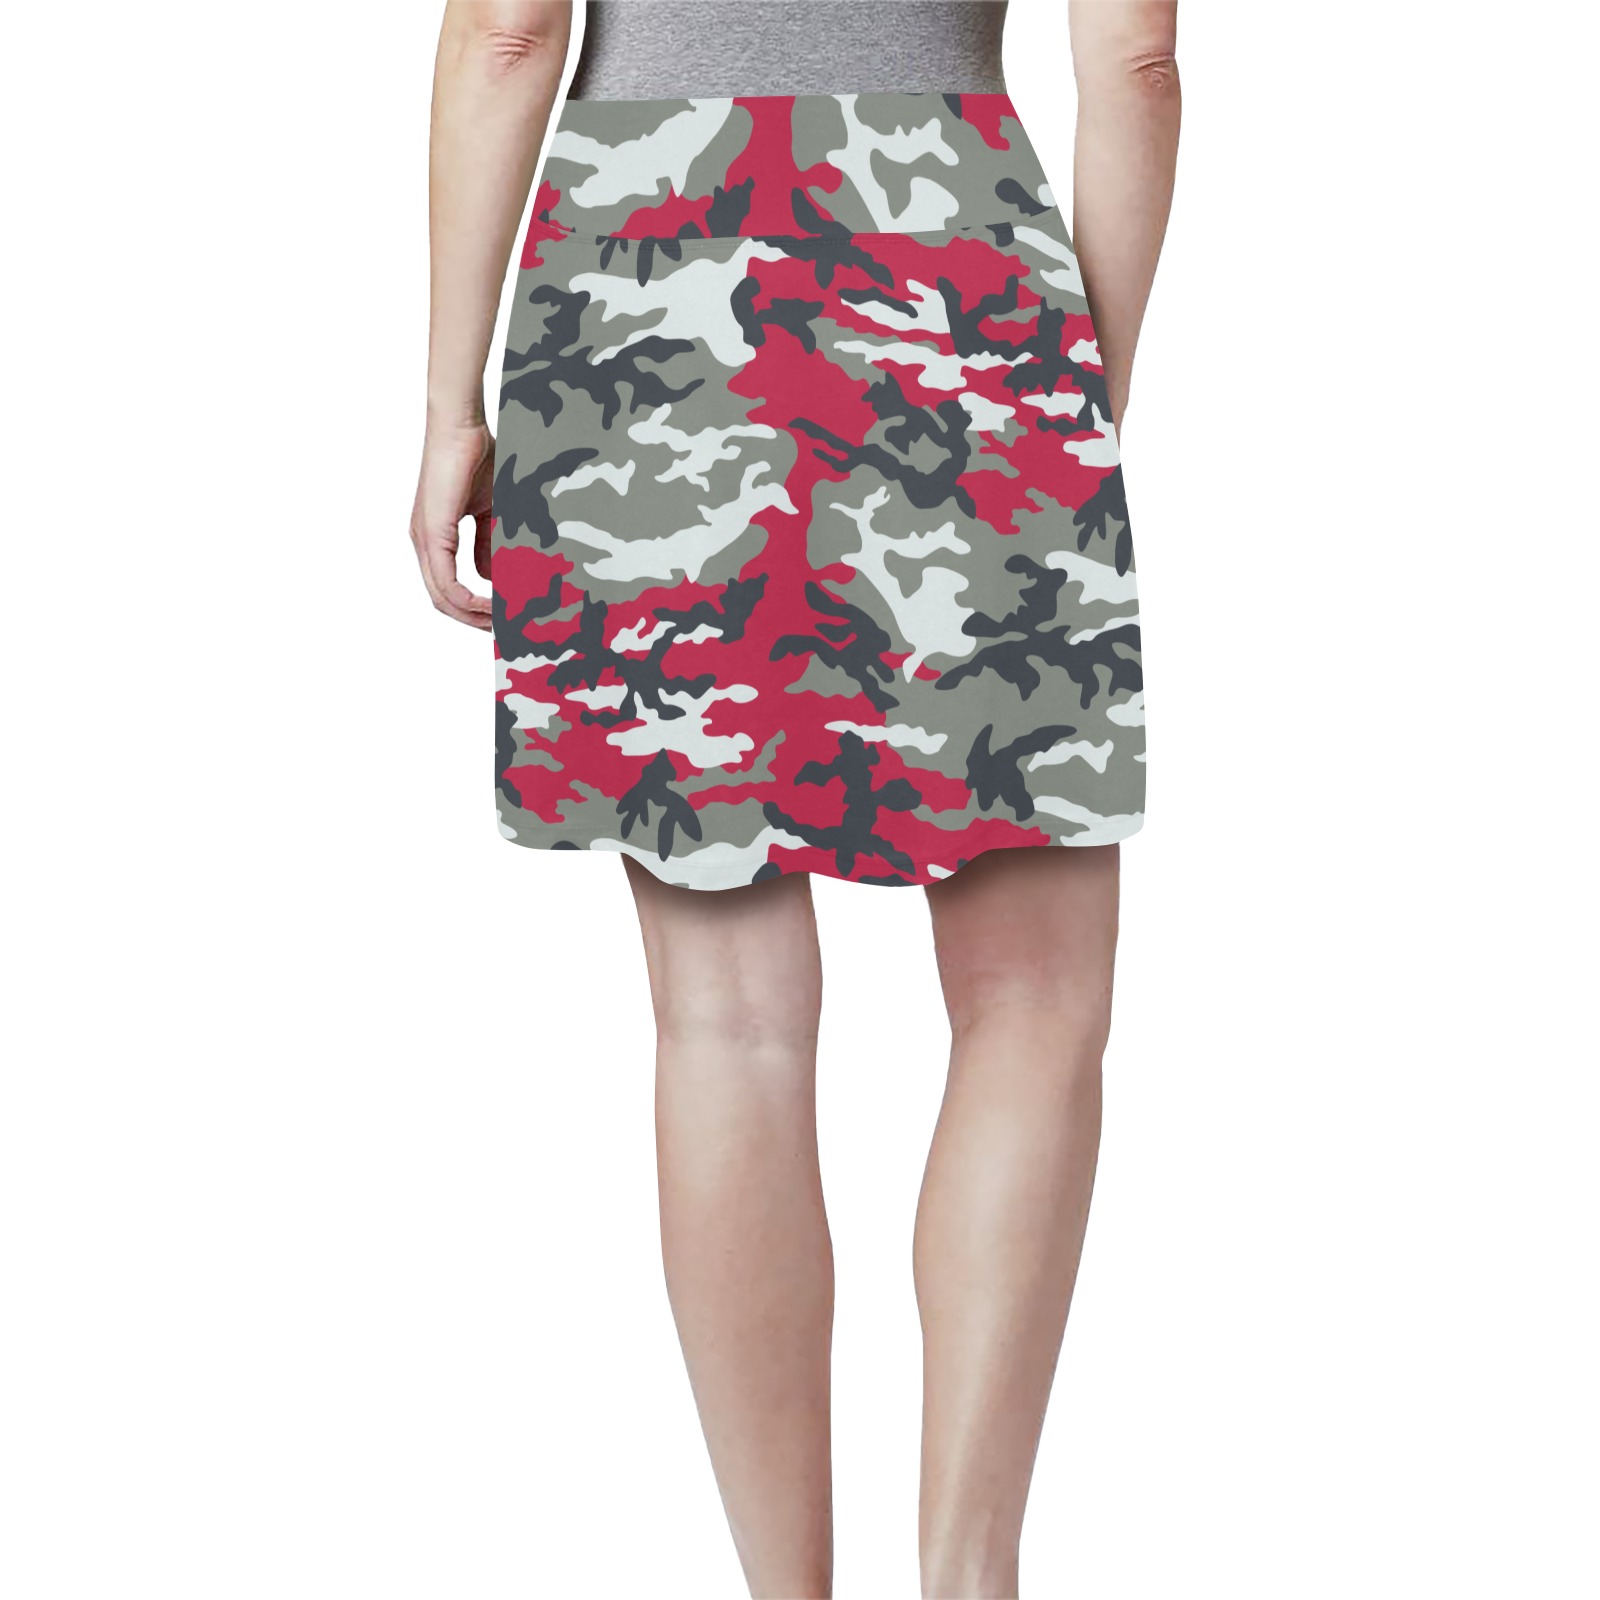 cherry-ERDL Women's Athletic Skirt (Model D64)